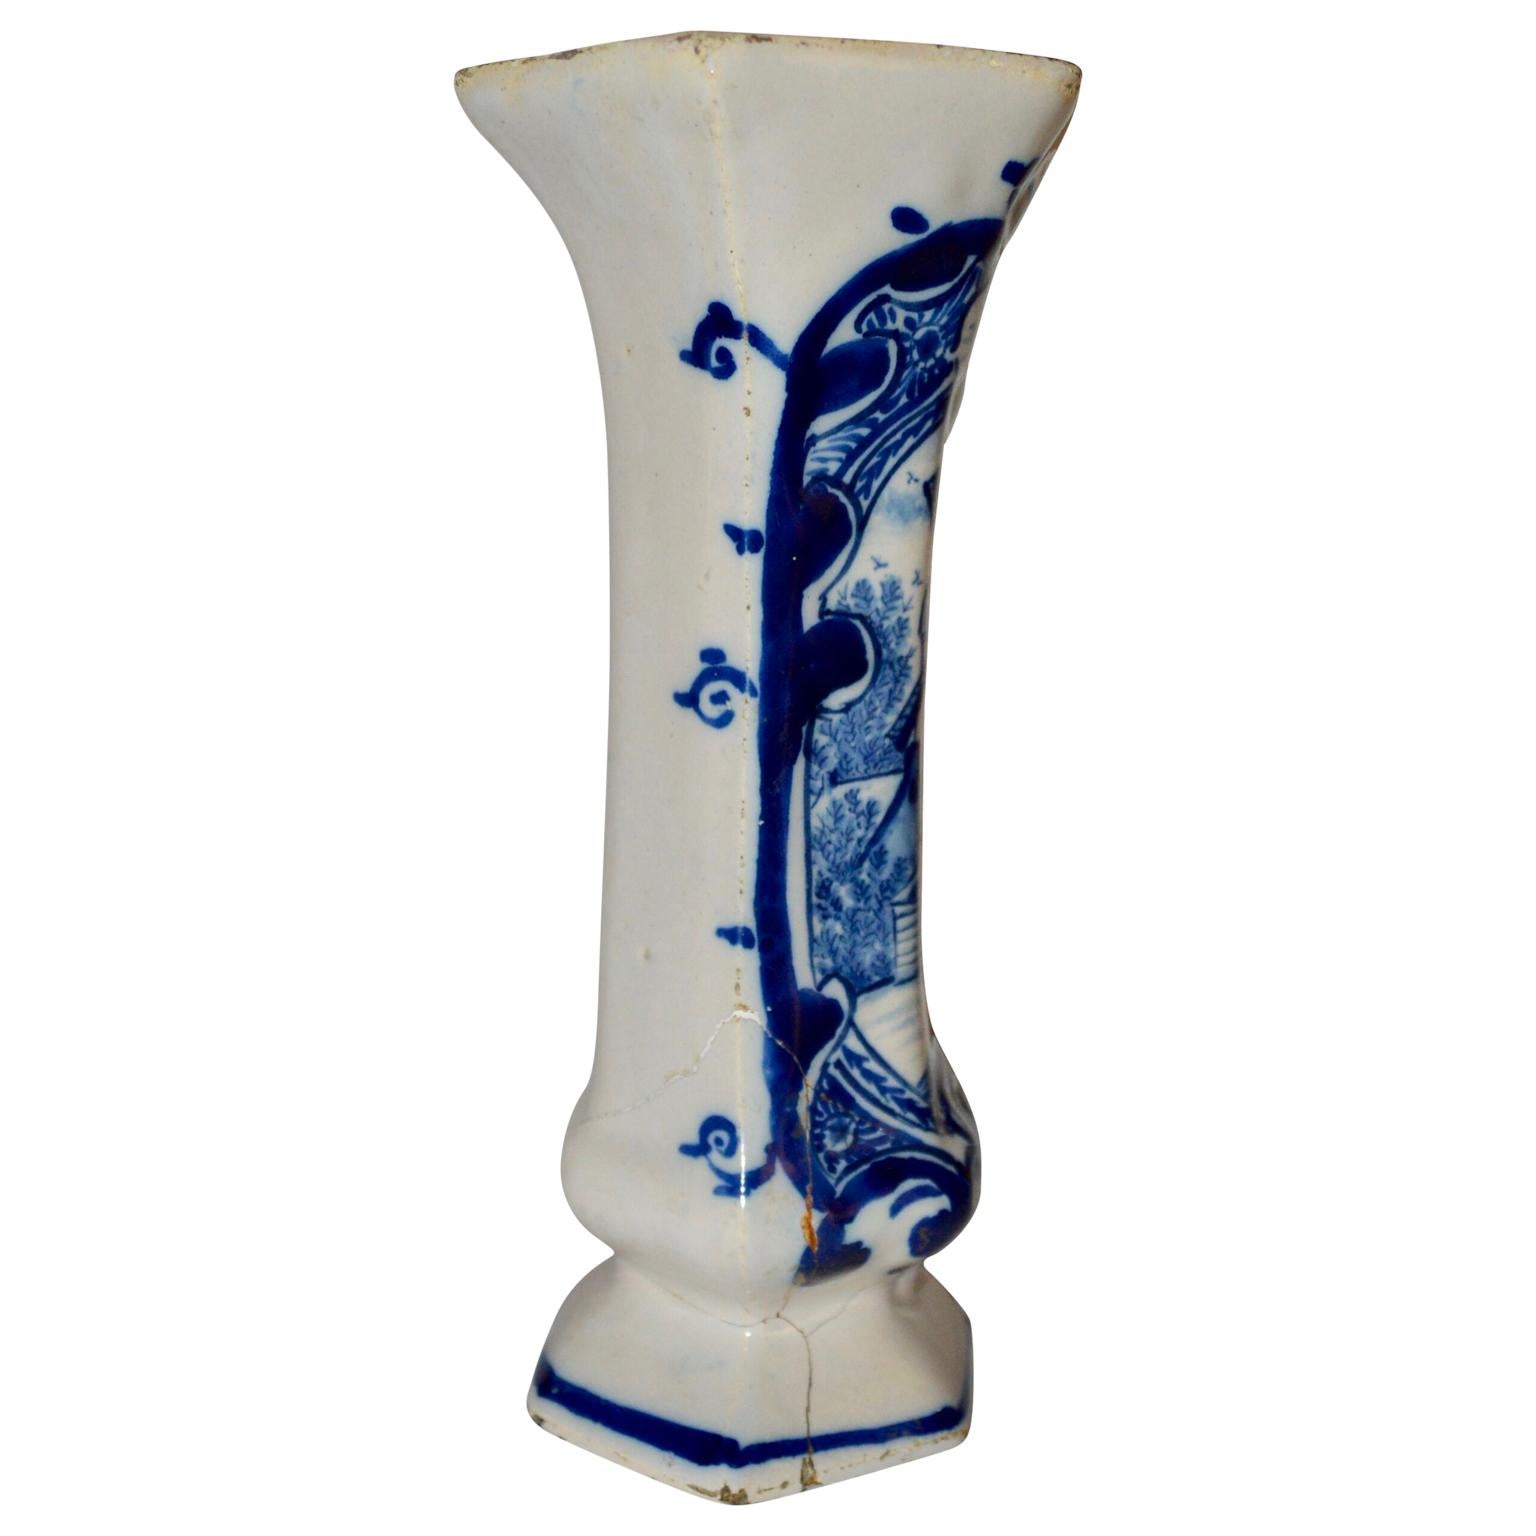 Die blau-weiße holländische Delft-Vase aus dem späten 18. Jahrhundert ist mit einem traditionellen Muster in Kobaltblau bemalt.